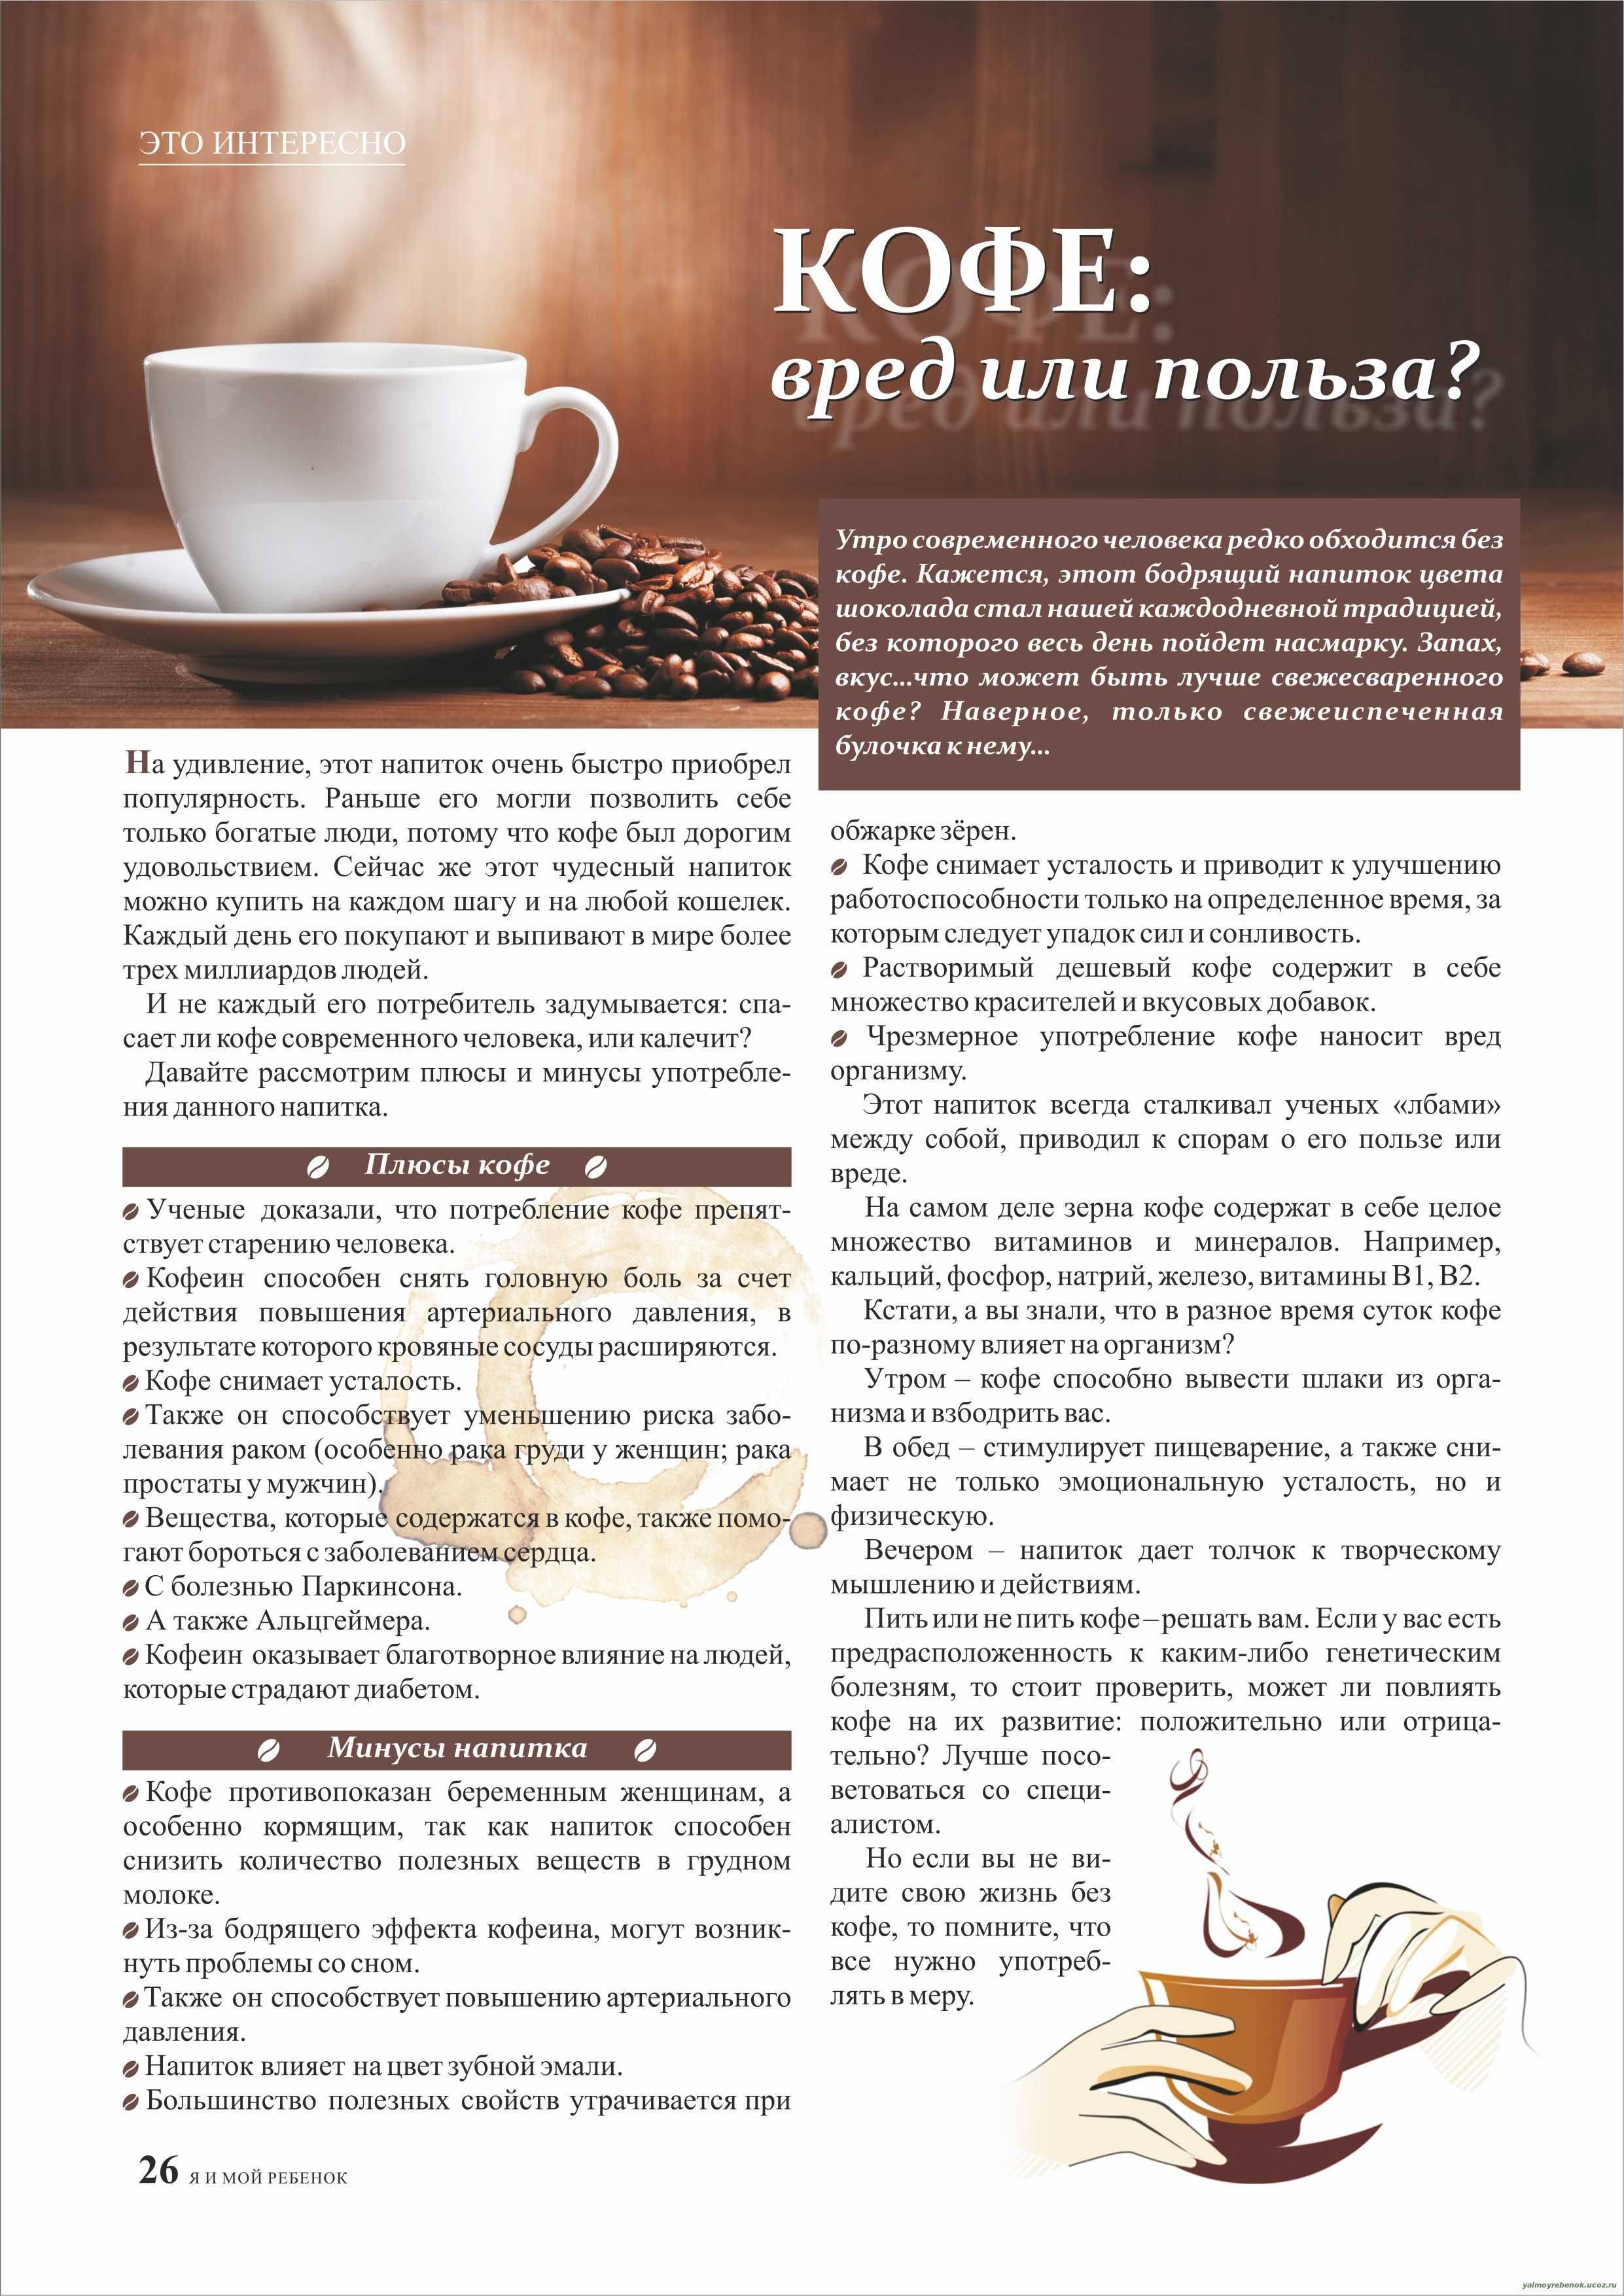 Кофе и потенция. влияние кофе на потенцию у мужчин